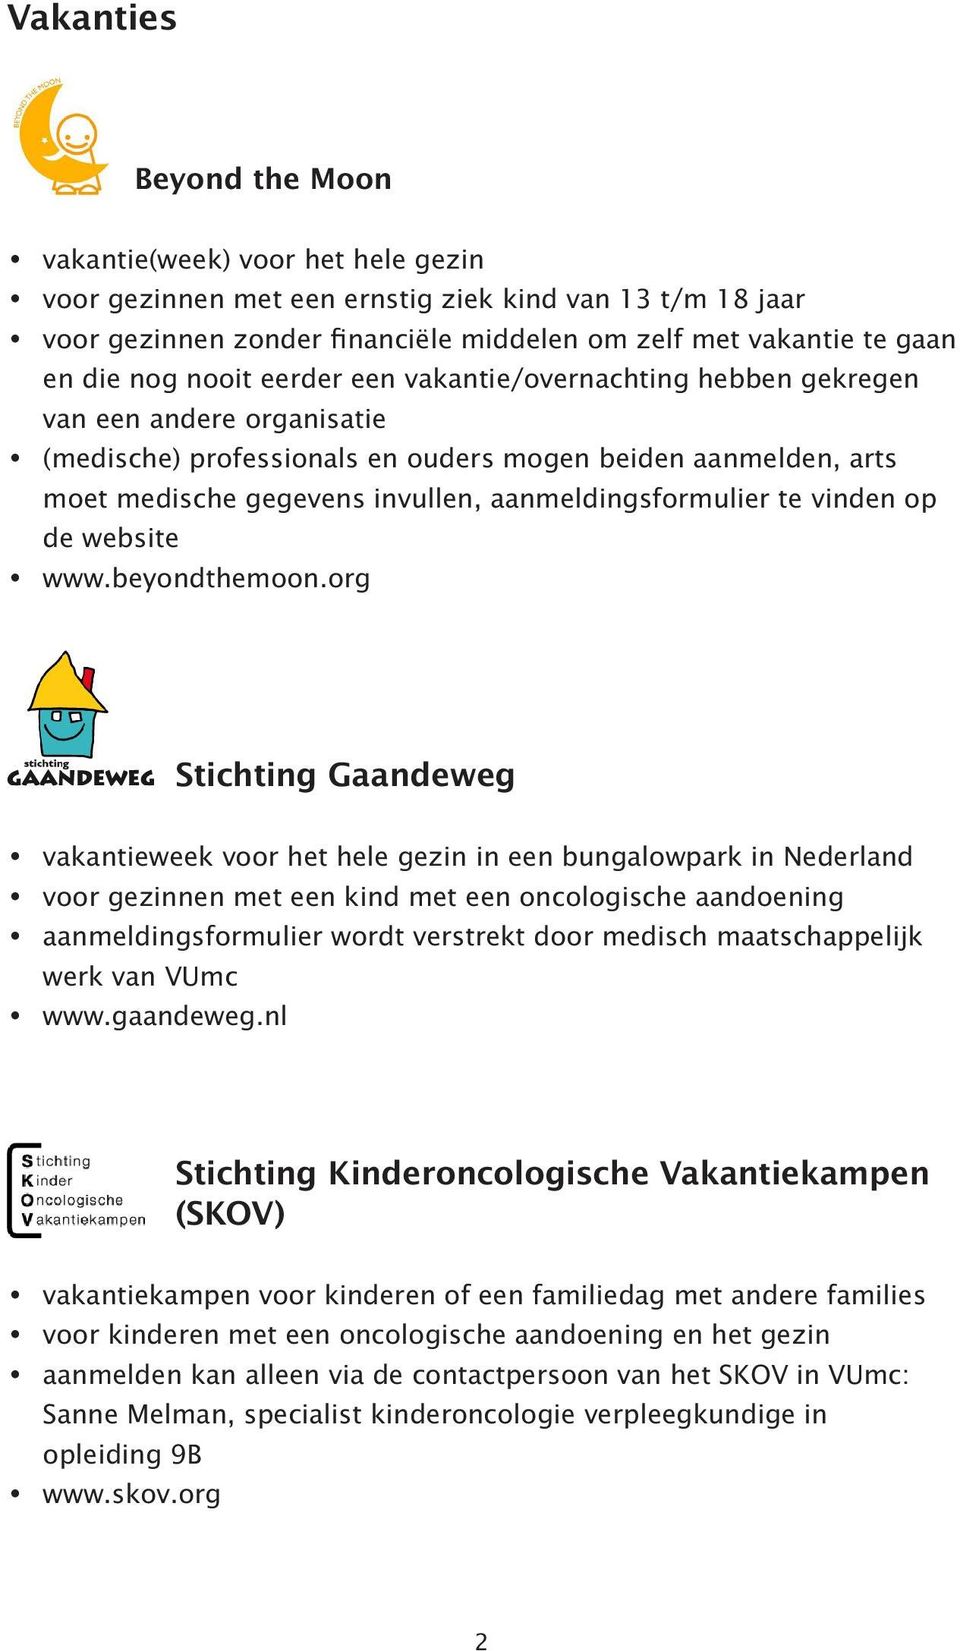 org Stichting Gaandeweg vakantieweek voor het hele gezin in een bungalowpark in Nederland voor gezinnen met een kind met een oncologische aandoening aanmeldingsformulier wordt verstrekt door medisch